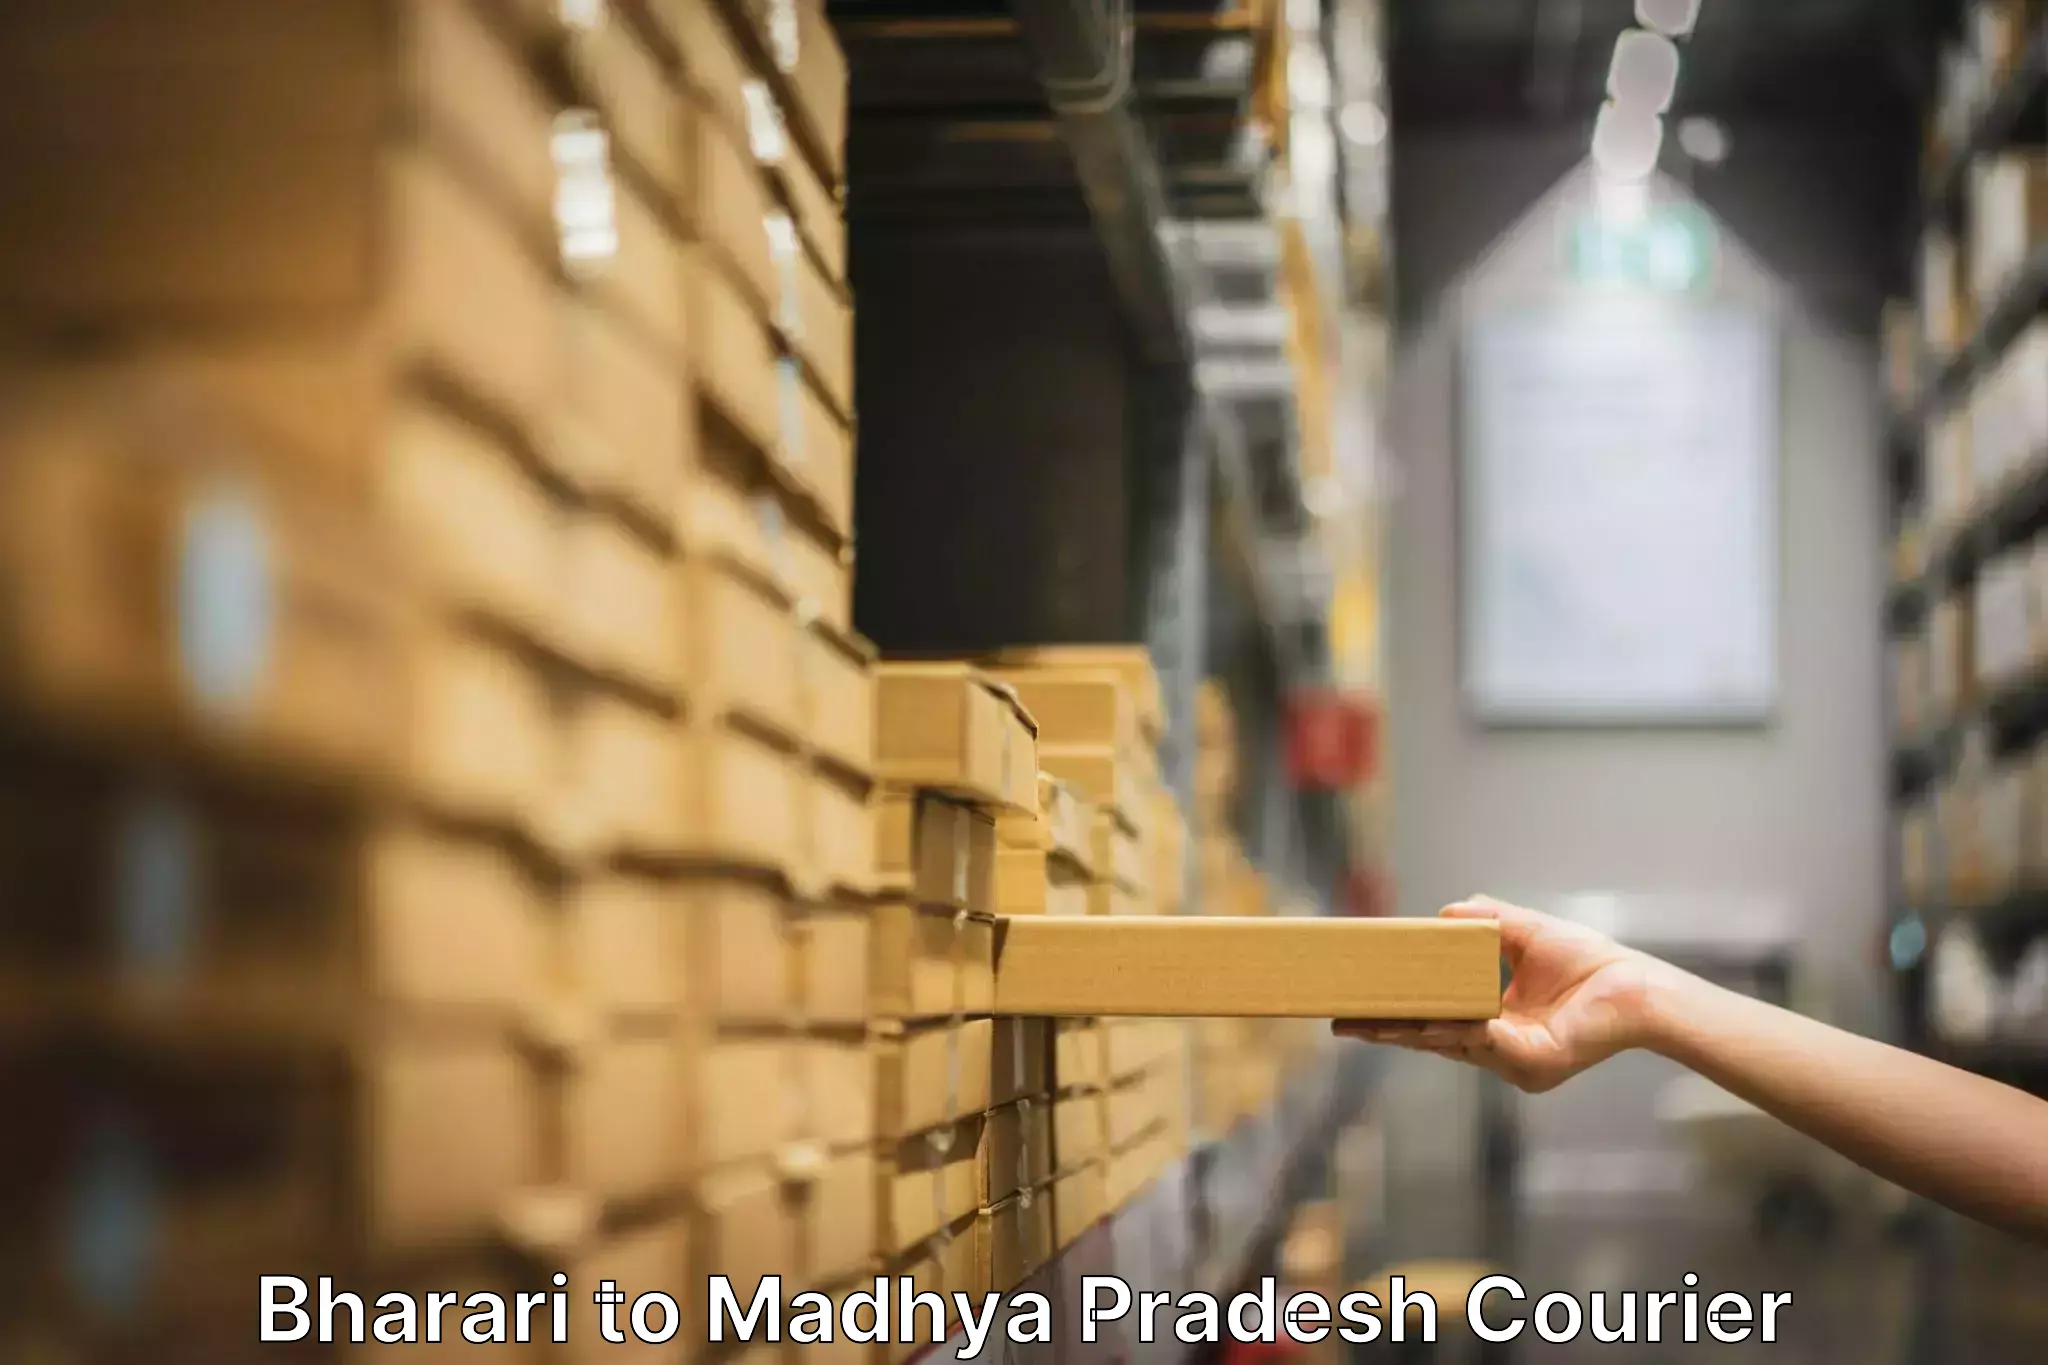 Furniture transport professionals Bharari to Madhya Pradesh